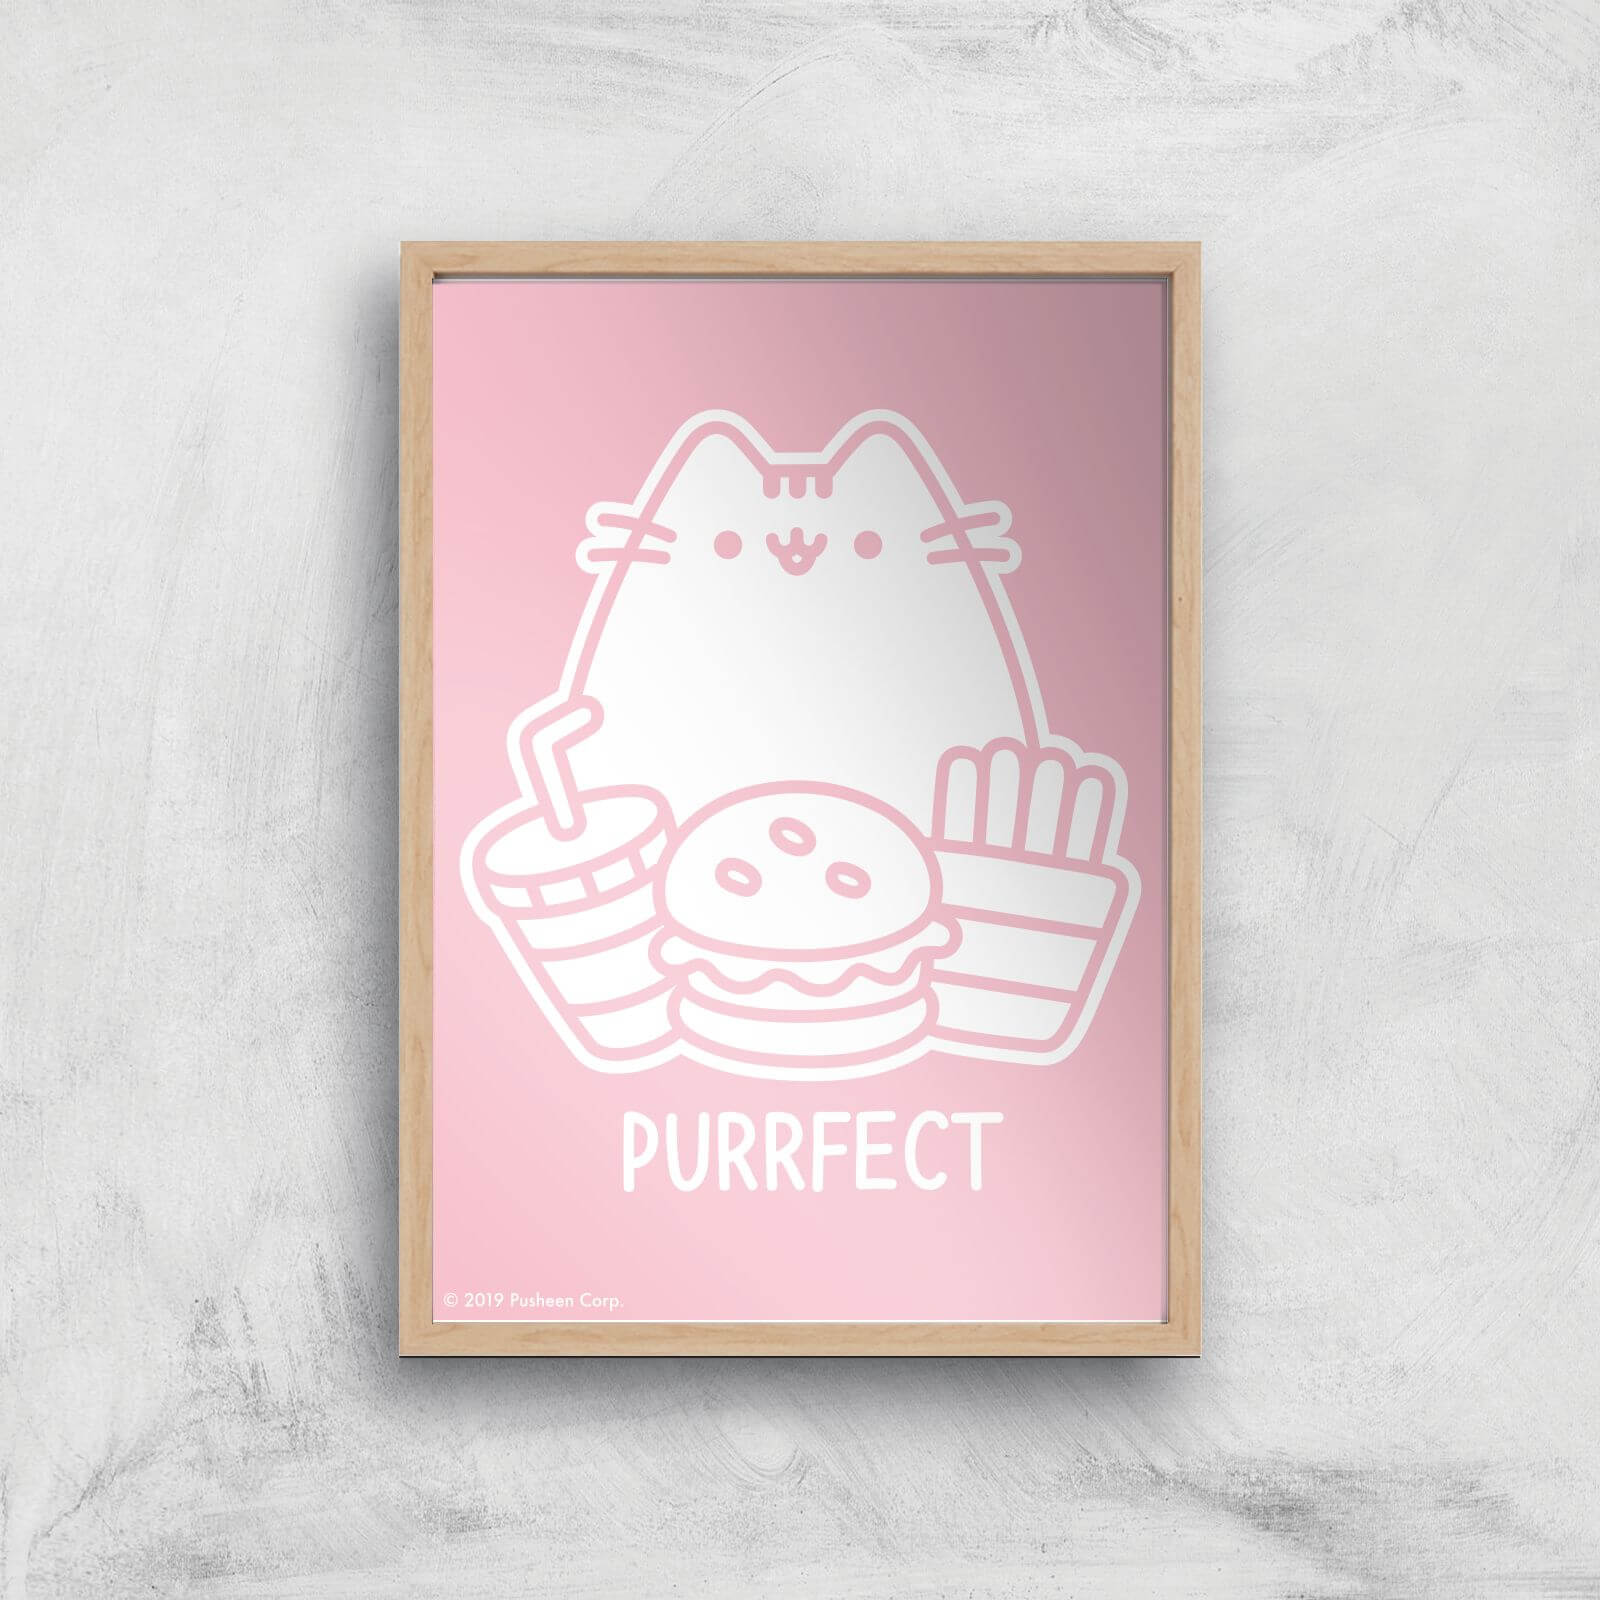 Pusheen Purrfect Junk Food Giclee Art Print - A3 - Wooden Frame